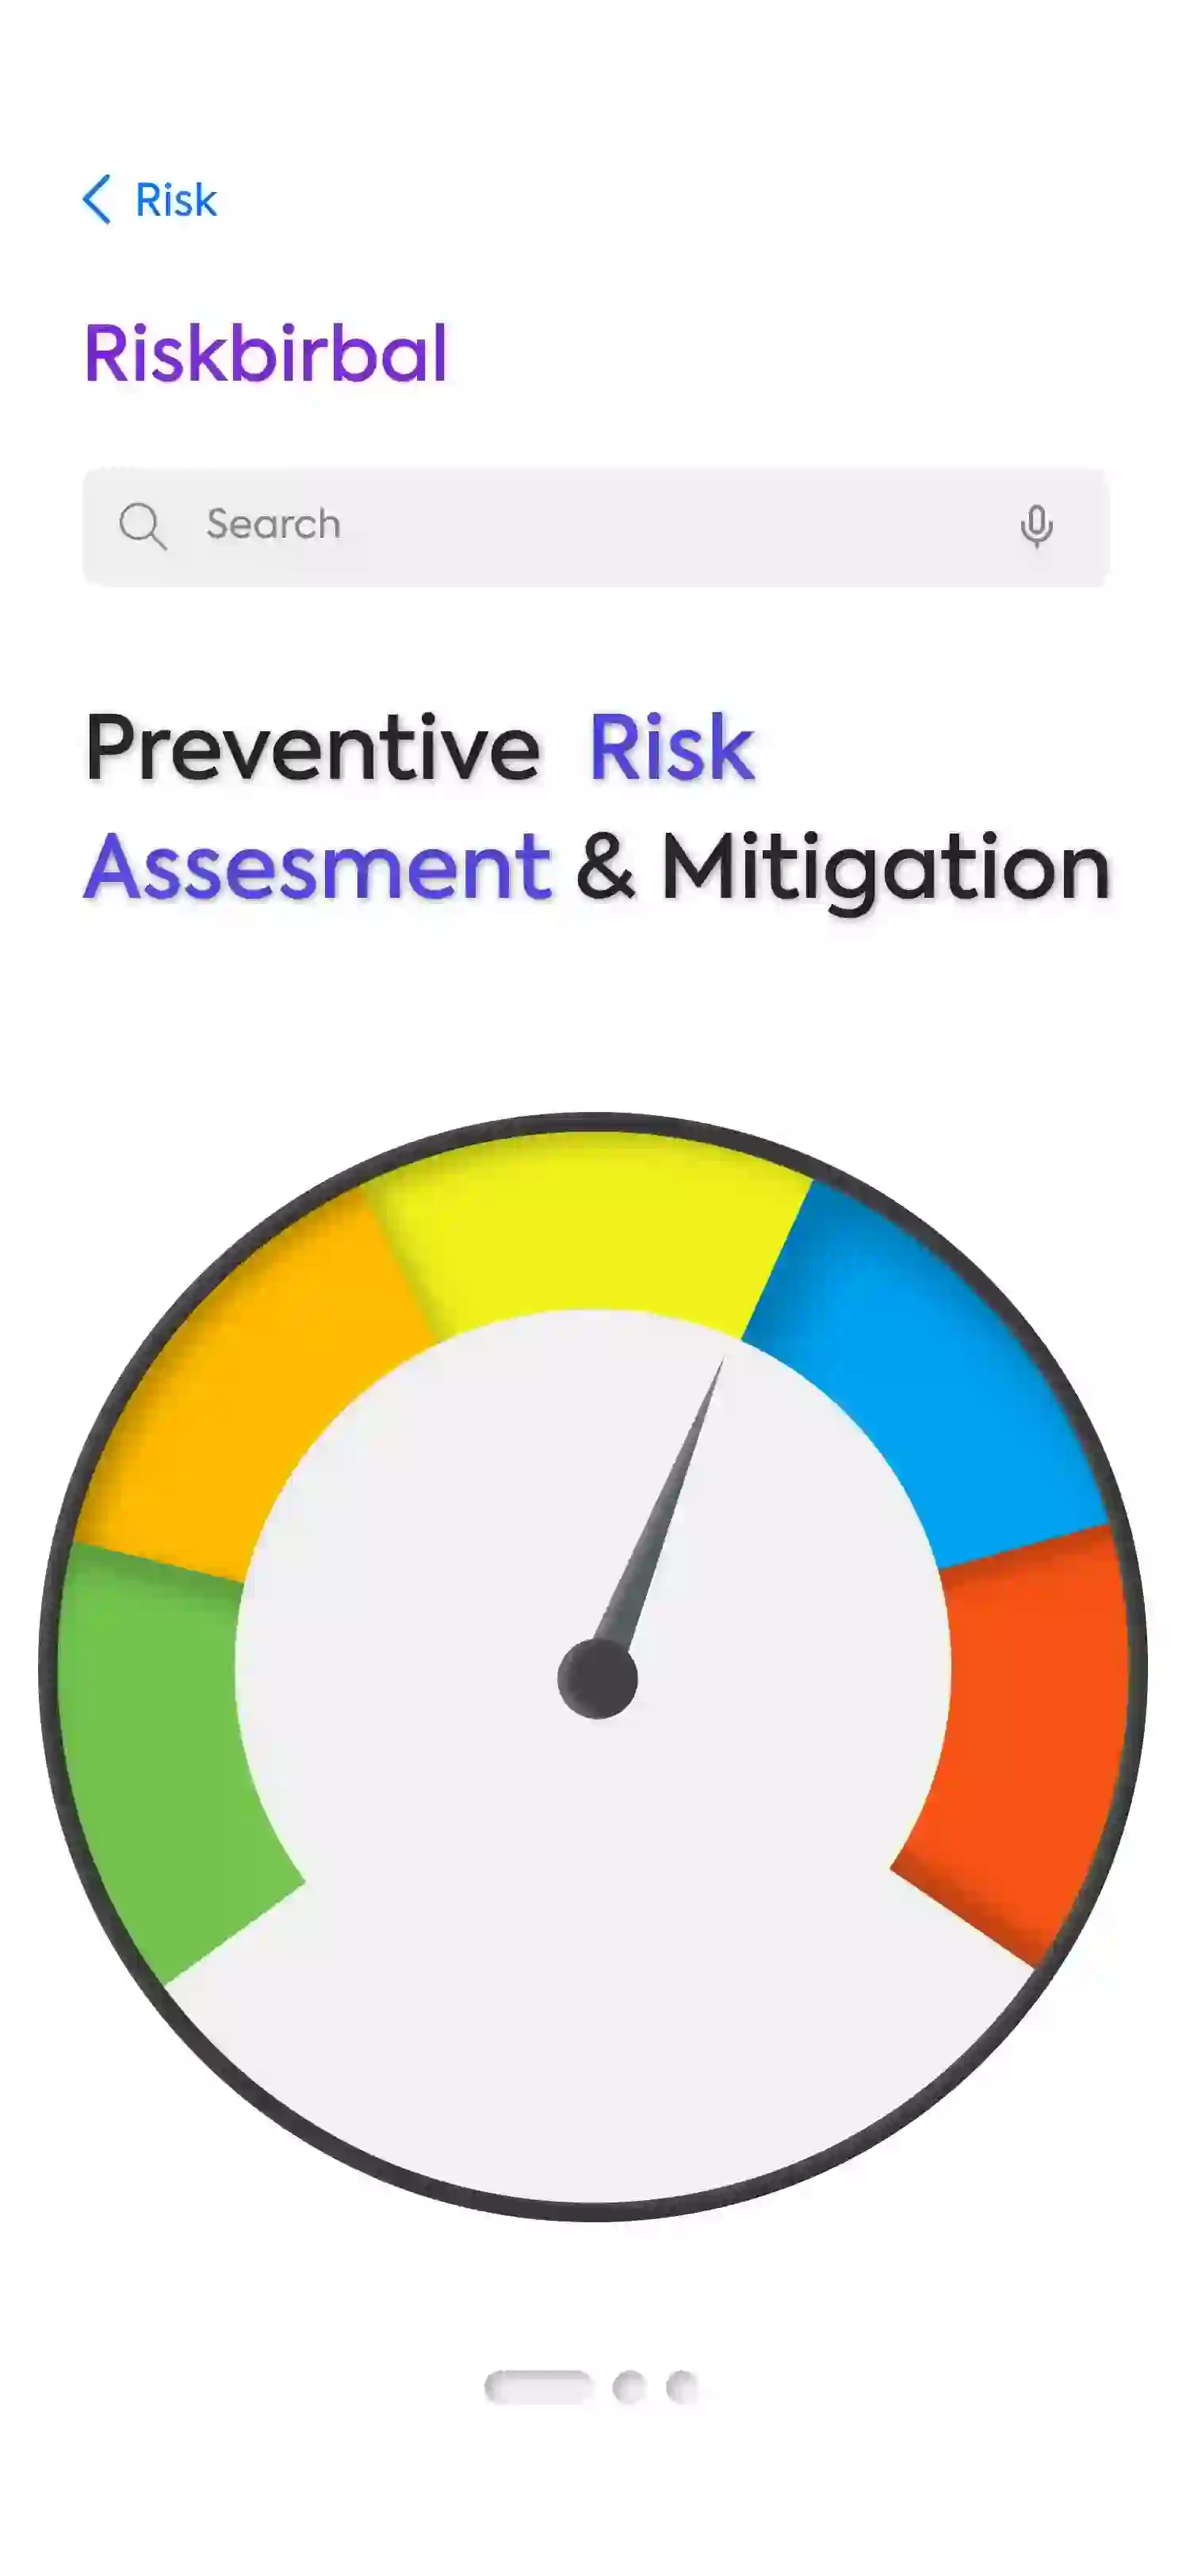 Risk Assessment & Mitigation